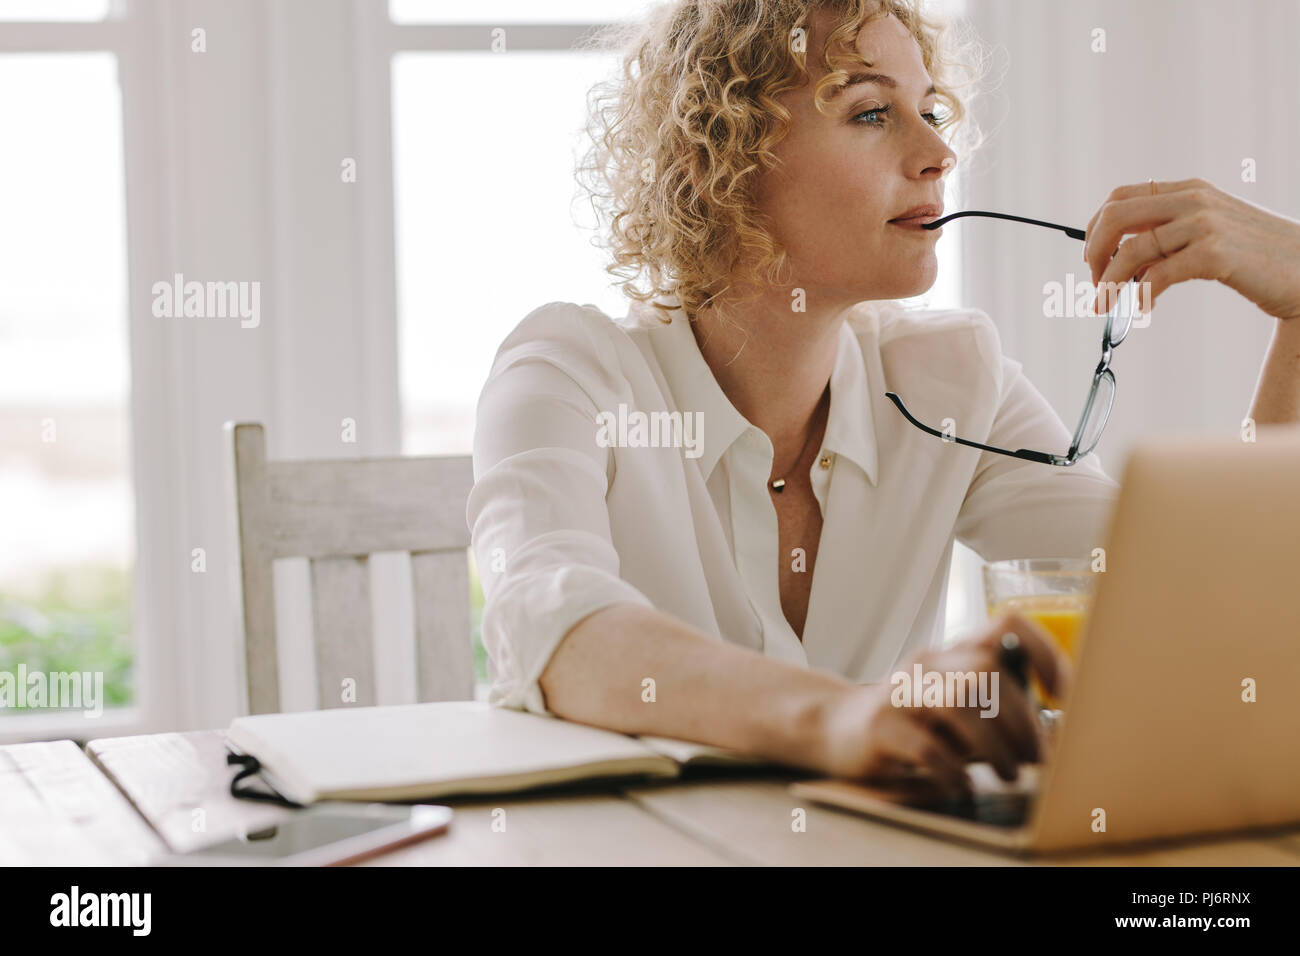 Frau tief zu denken, während auf dem Laptop zu Hause arbeiten. Frau sitzt zu Hause arbeiten mit Laptop und Tagebuch auf dem Tisch. Stockfoto